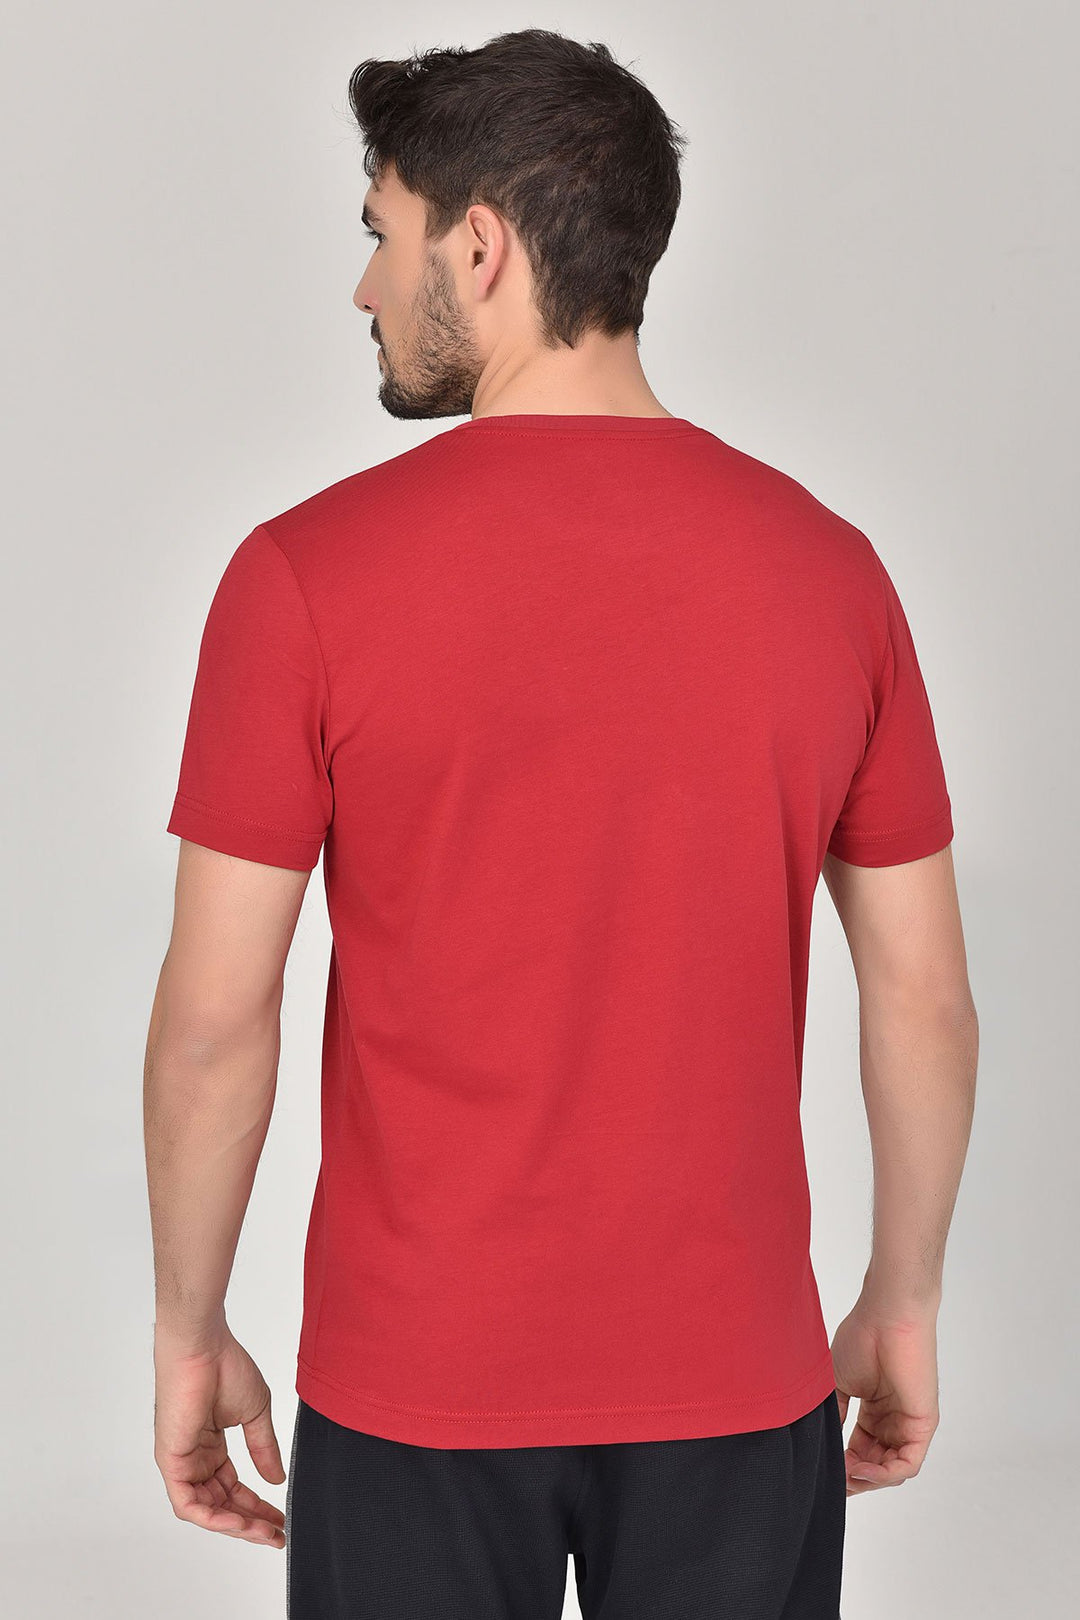 Herren Einfarbig Bedruckter Casual Sport Kurzarm T-Shirt